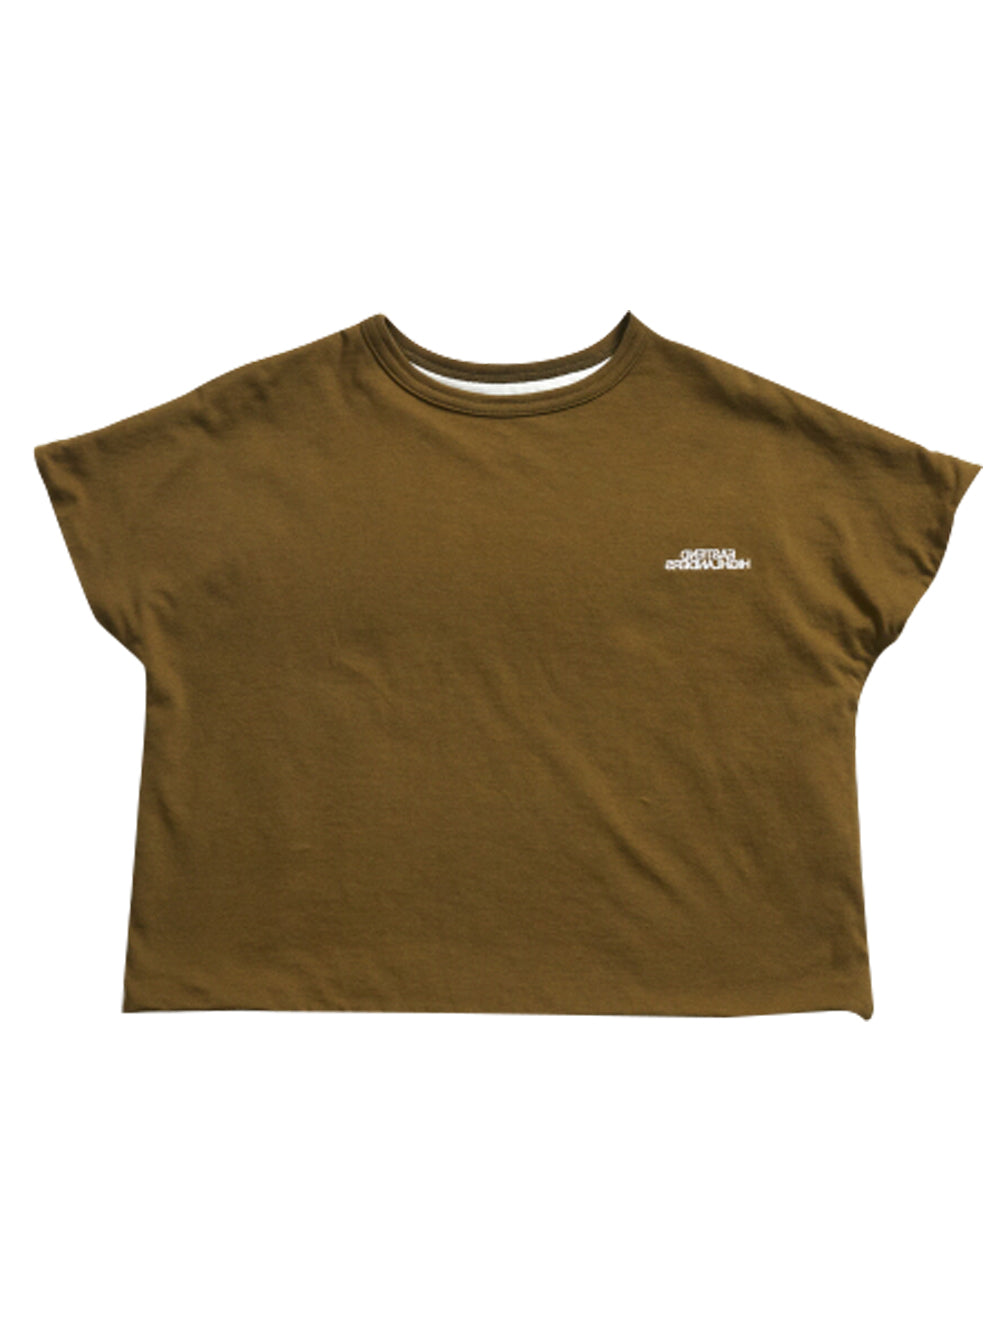 Olive Pocket T-Shirt